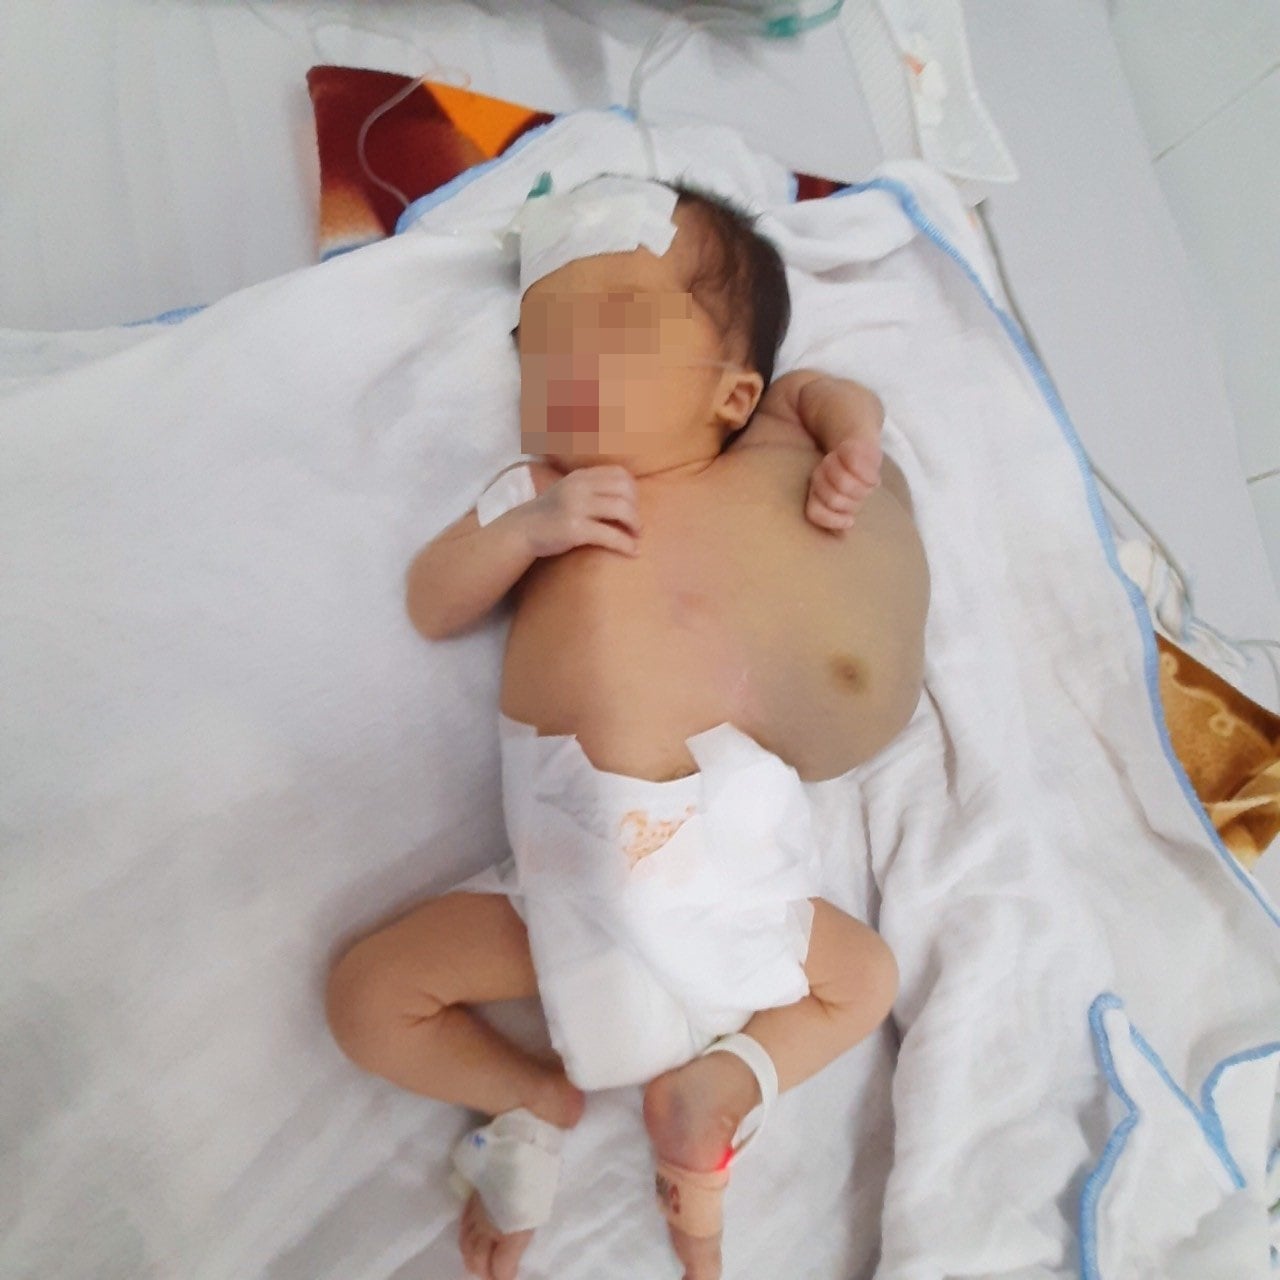 Phẫu thuật u bạch huyết khổng lồ cho trẻ sơ sinh 10 ngày tuổi - Ảnh 1.